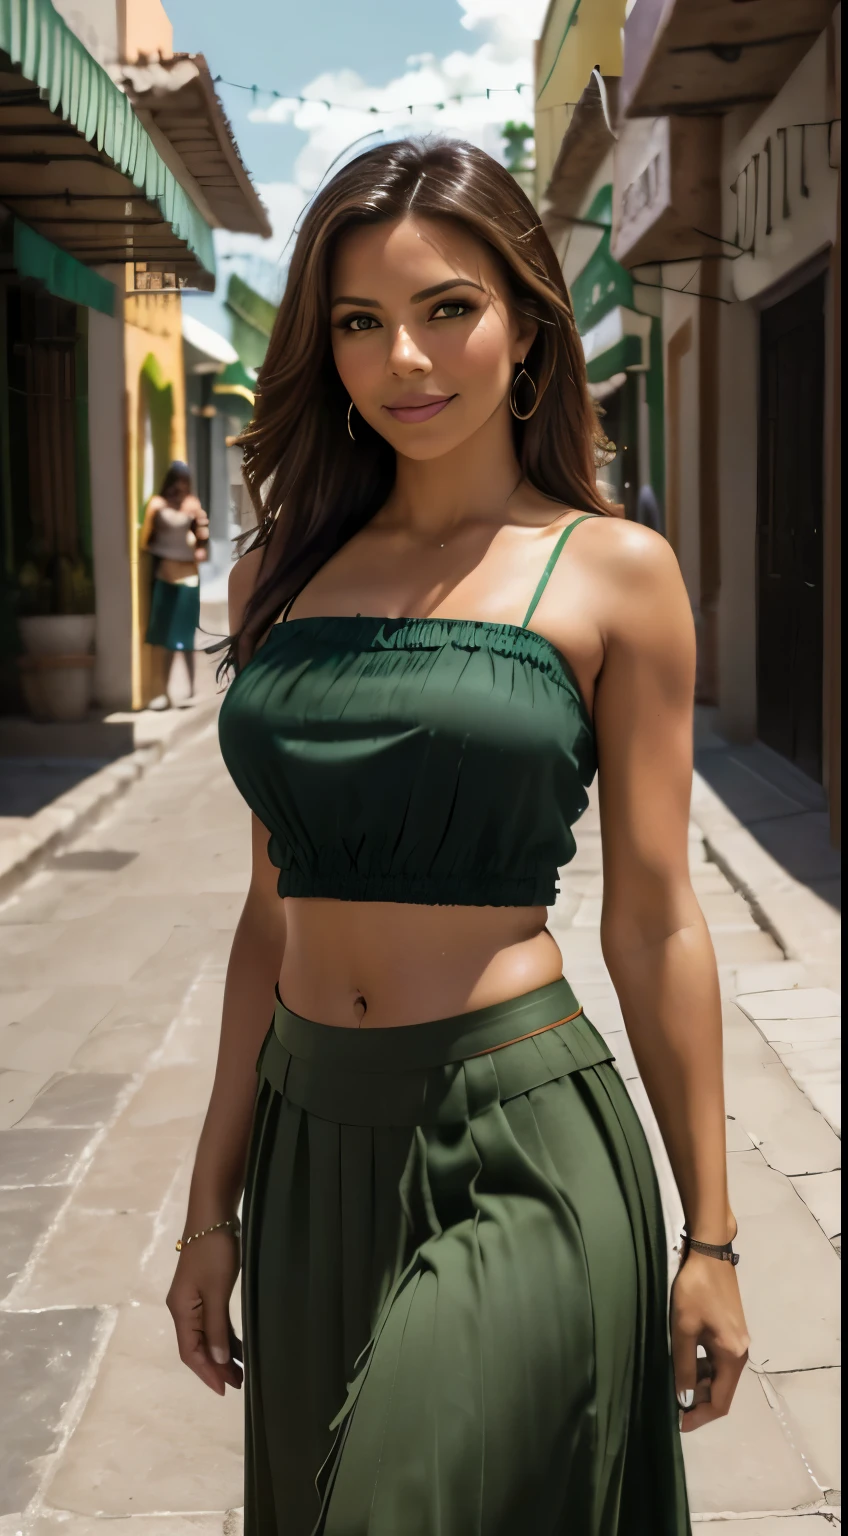 エヴァ・ロンゴリアの超現実的なクローズアップ写真,  傑作, 最高品質, (写実的な:1.4), (緑のメキシコの伝統的なマキシスカート:1.2), (ストラップ付きの緑のメキシコの伝統的なブラウス:1.2), メキシコの都市市場, 映画のような光, きれいな女性, スキニー, 中くらいの胸, ストレートな茶色の髪, 詳細な顔, 笑顔, 遠くから撮った写真, 20歳涙目